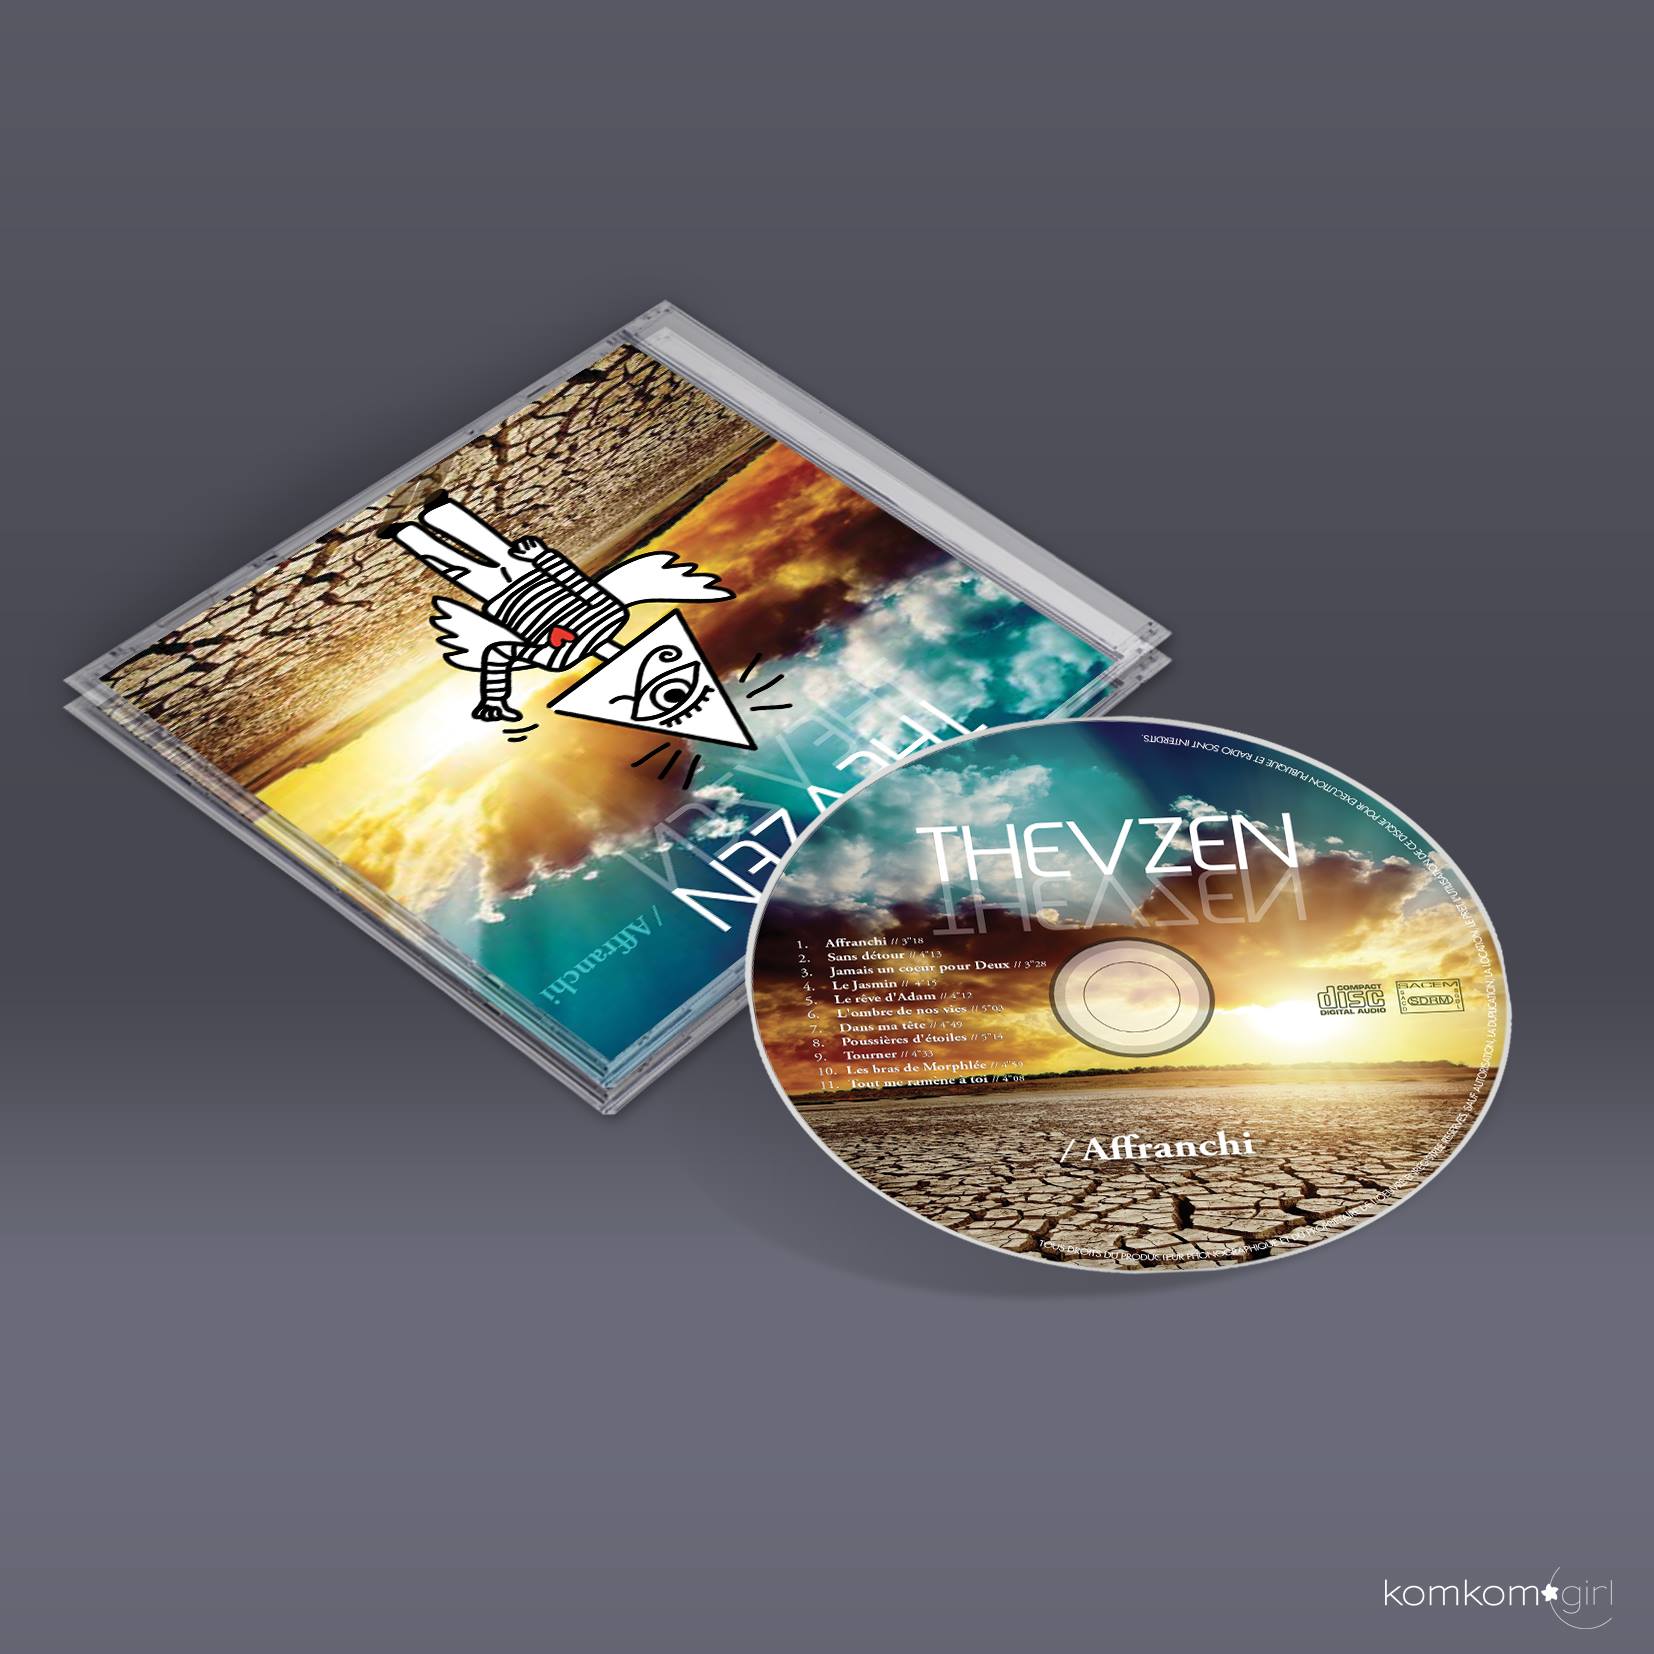 Thevzen - pochette et livret album - conception realisation illustration